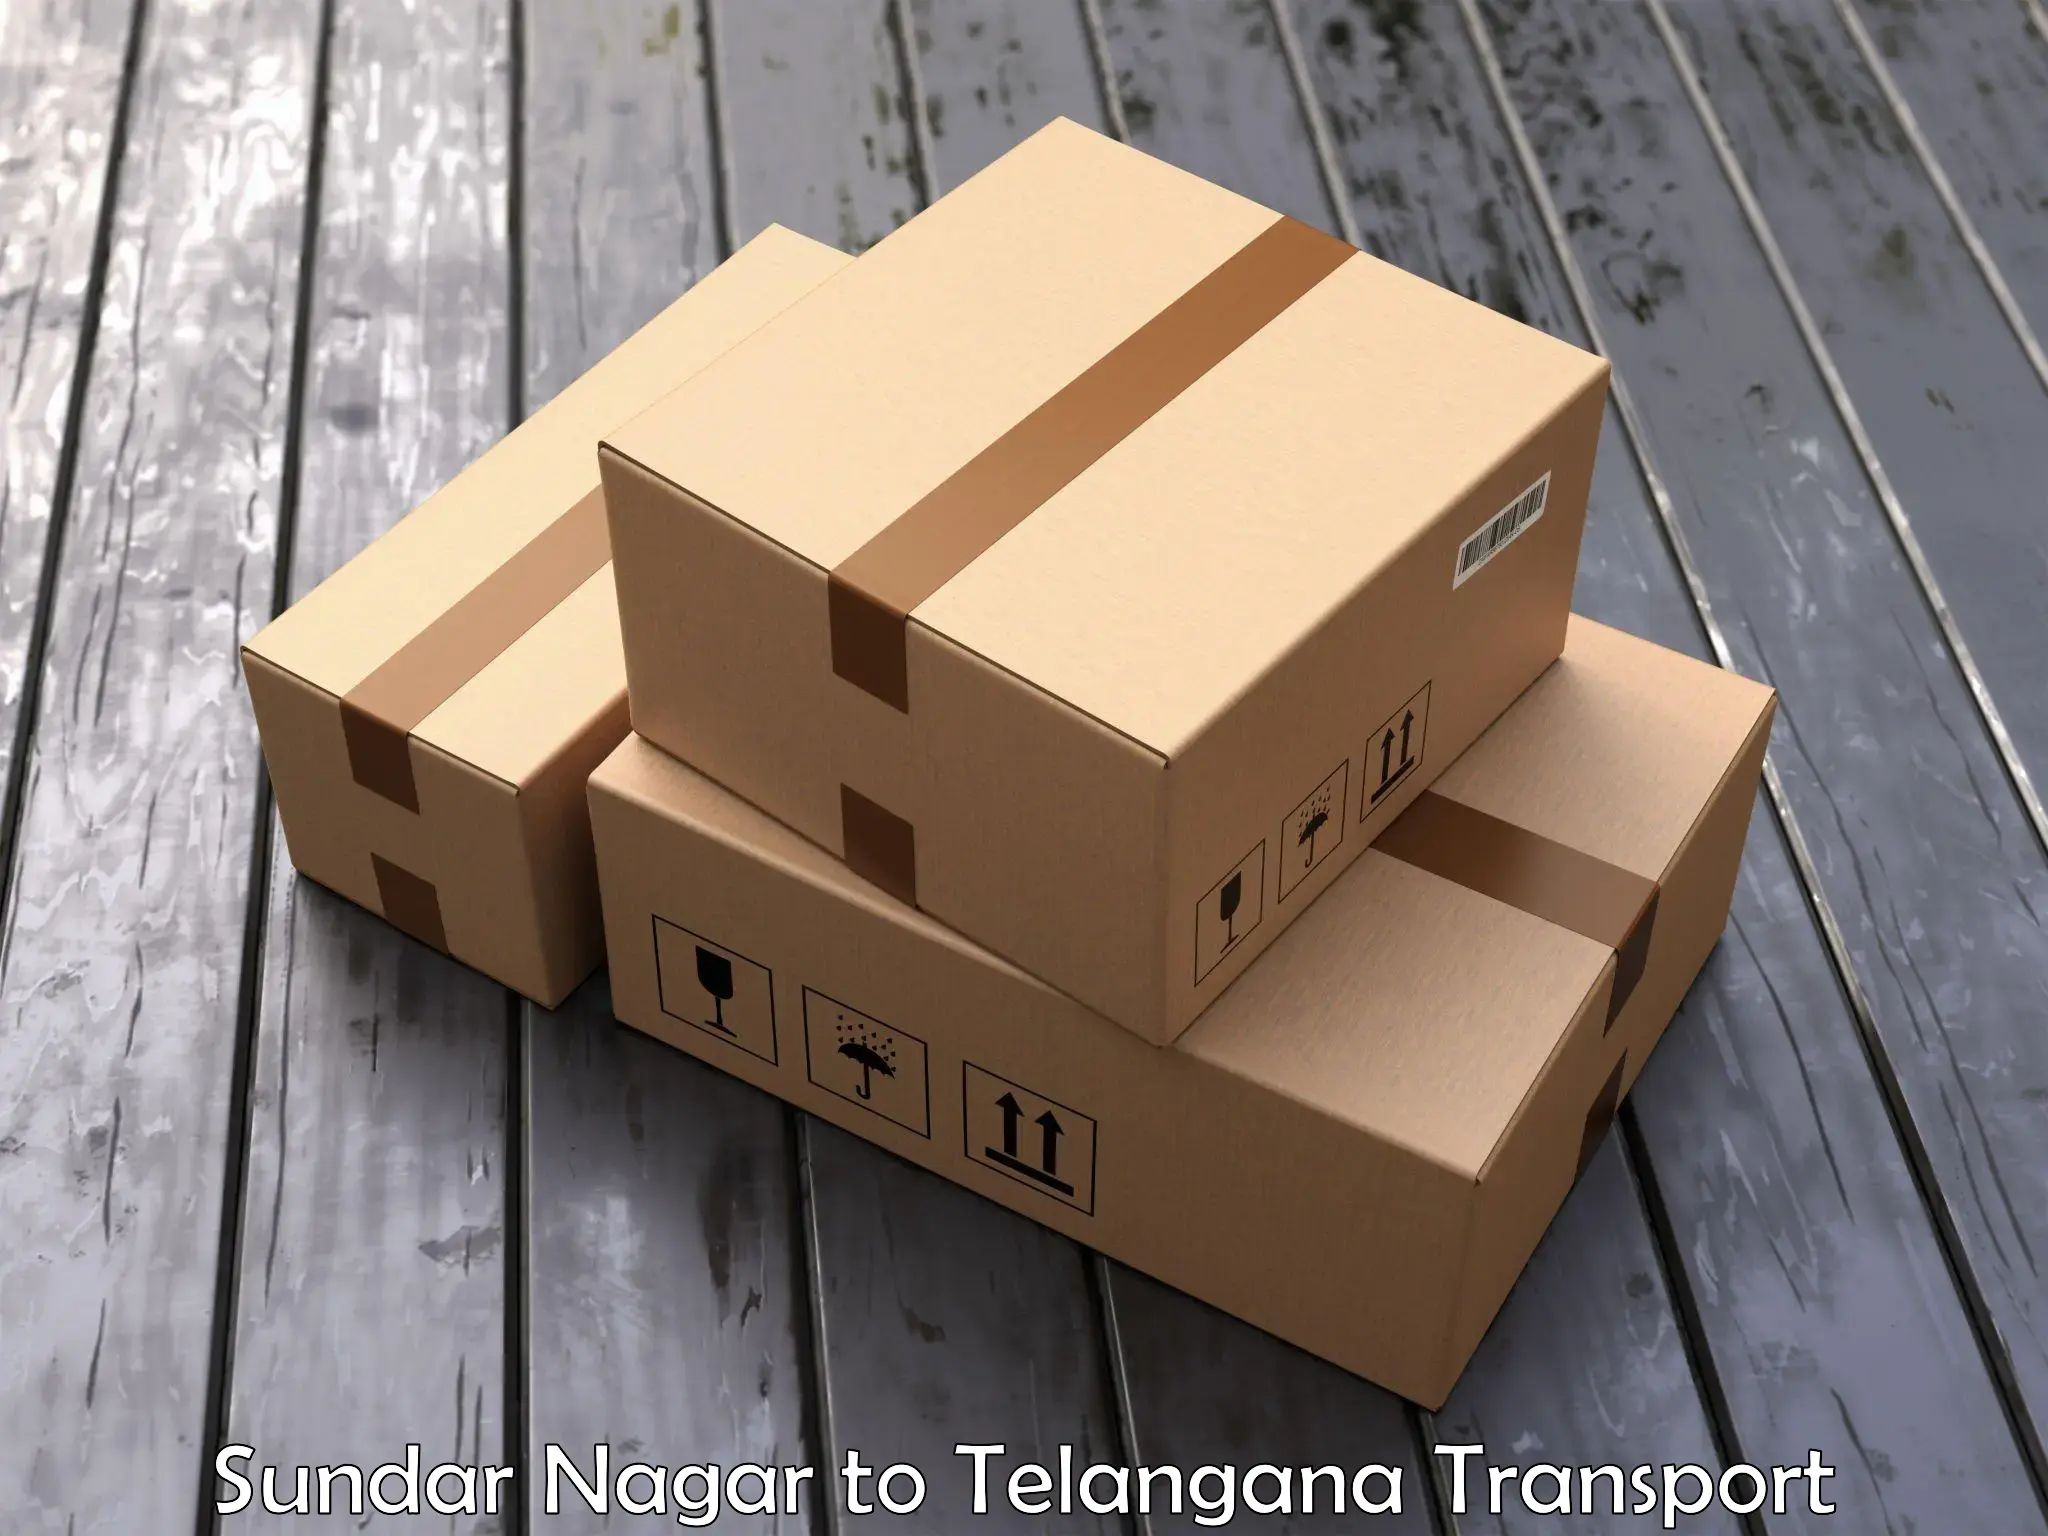 Container transport service Sundar Nagar to Chennur